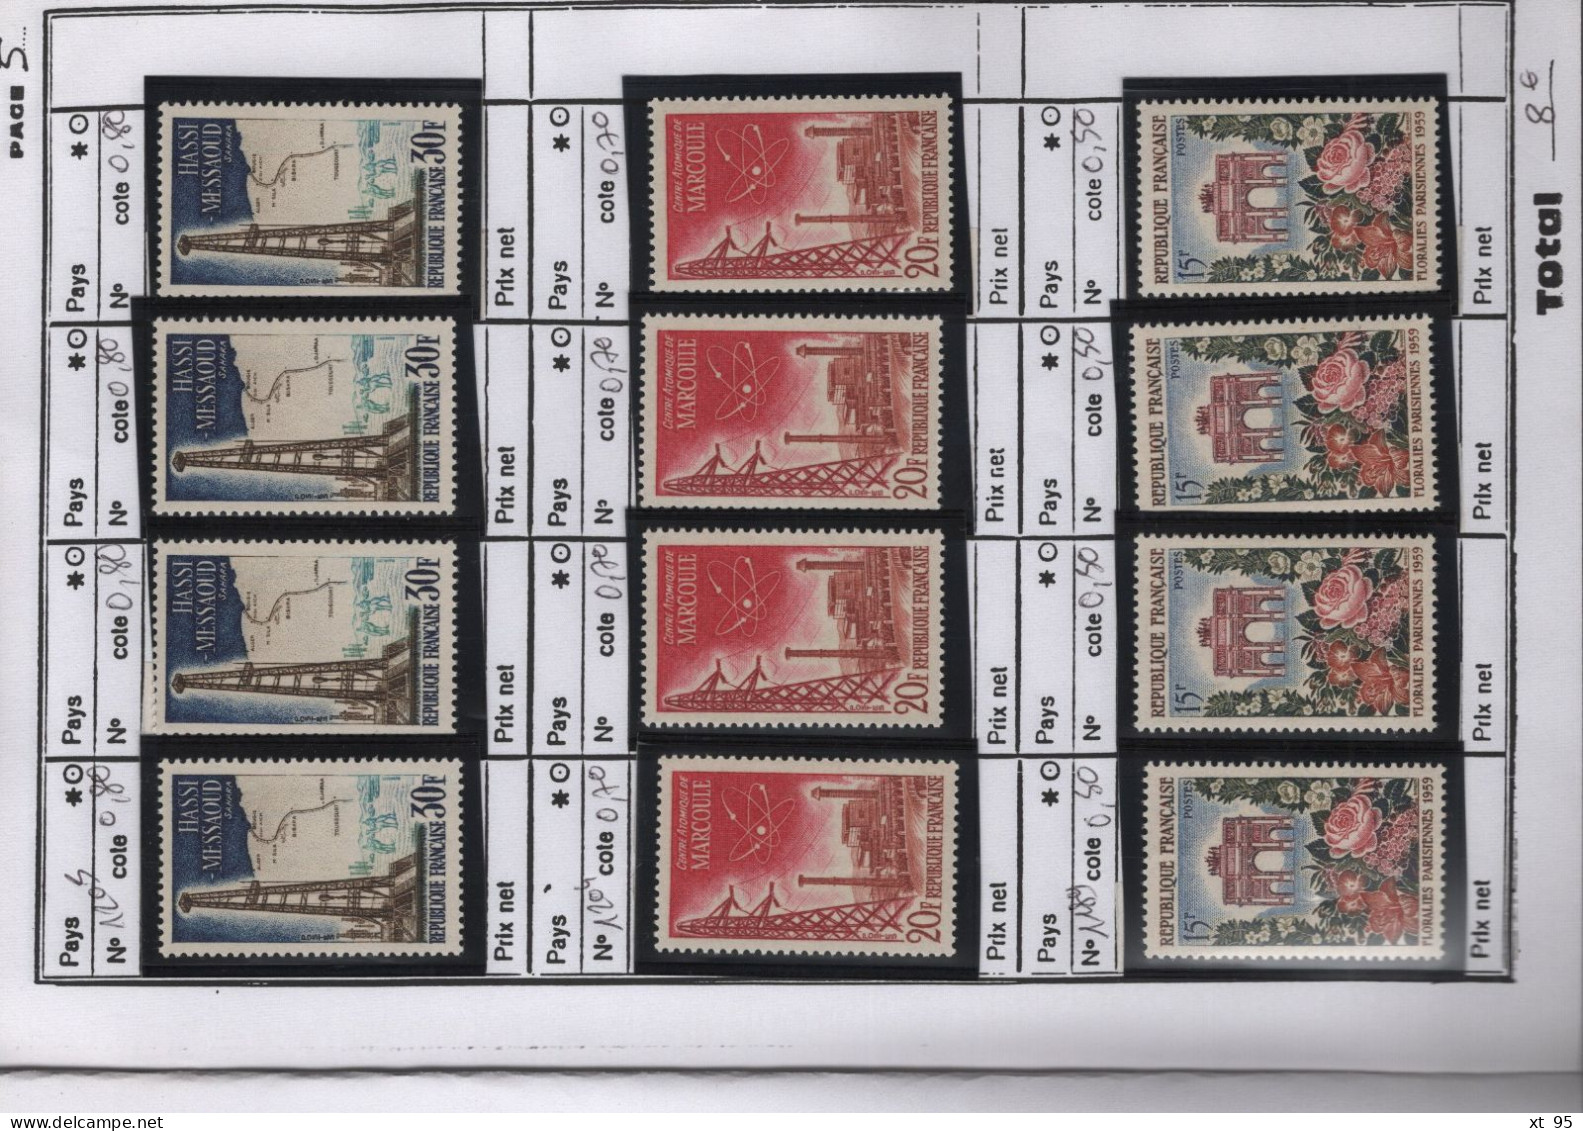 Carnet de circulation 16 pages avec timbres neufs ** sans charniere - cote +230€